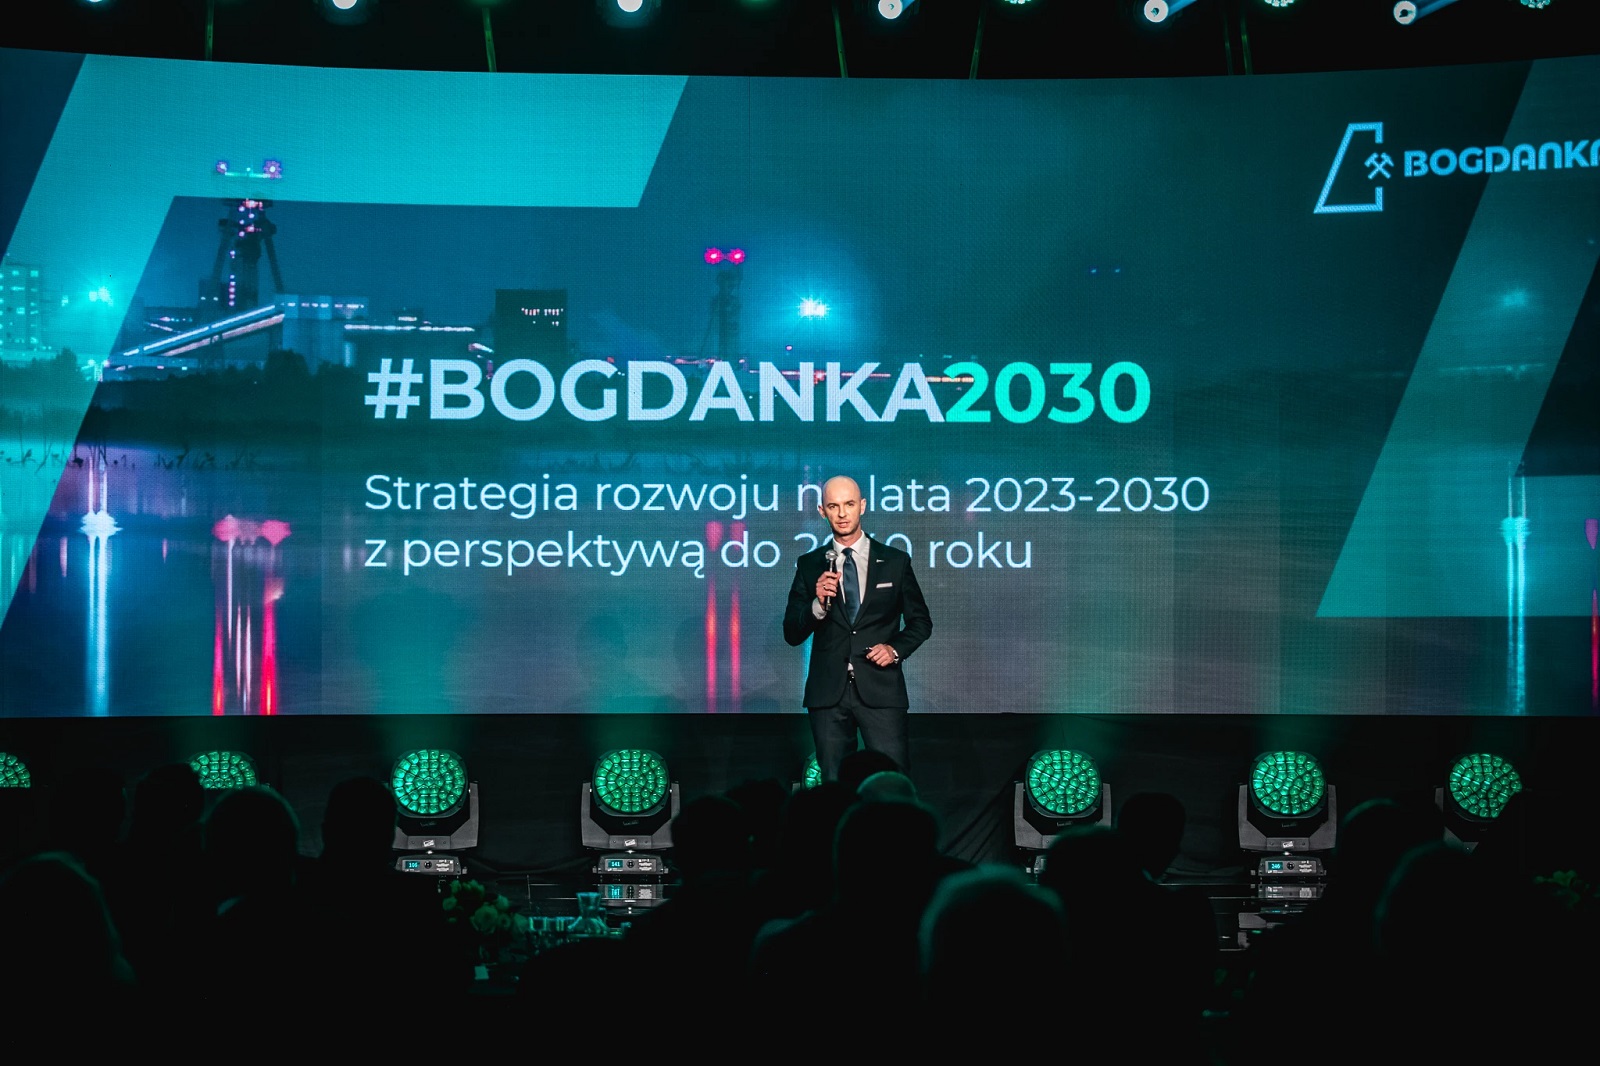 Prezes Kopalni Bogdanka prezentuje nową strategię. Fot. Bogdanka Lubelski Węgiel.